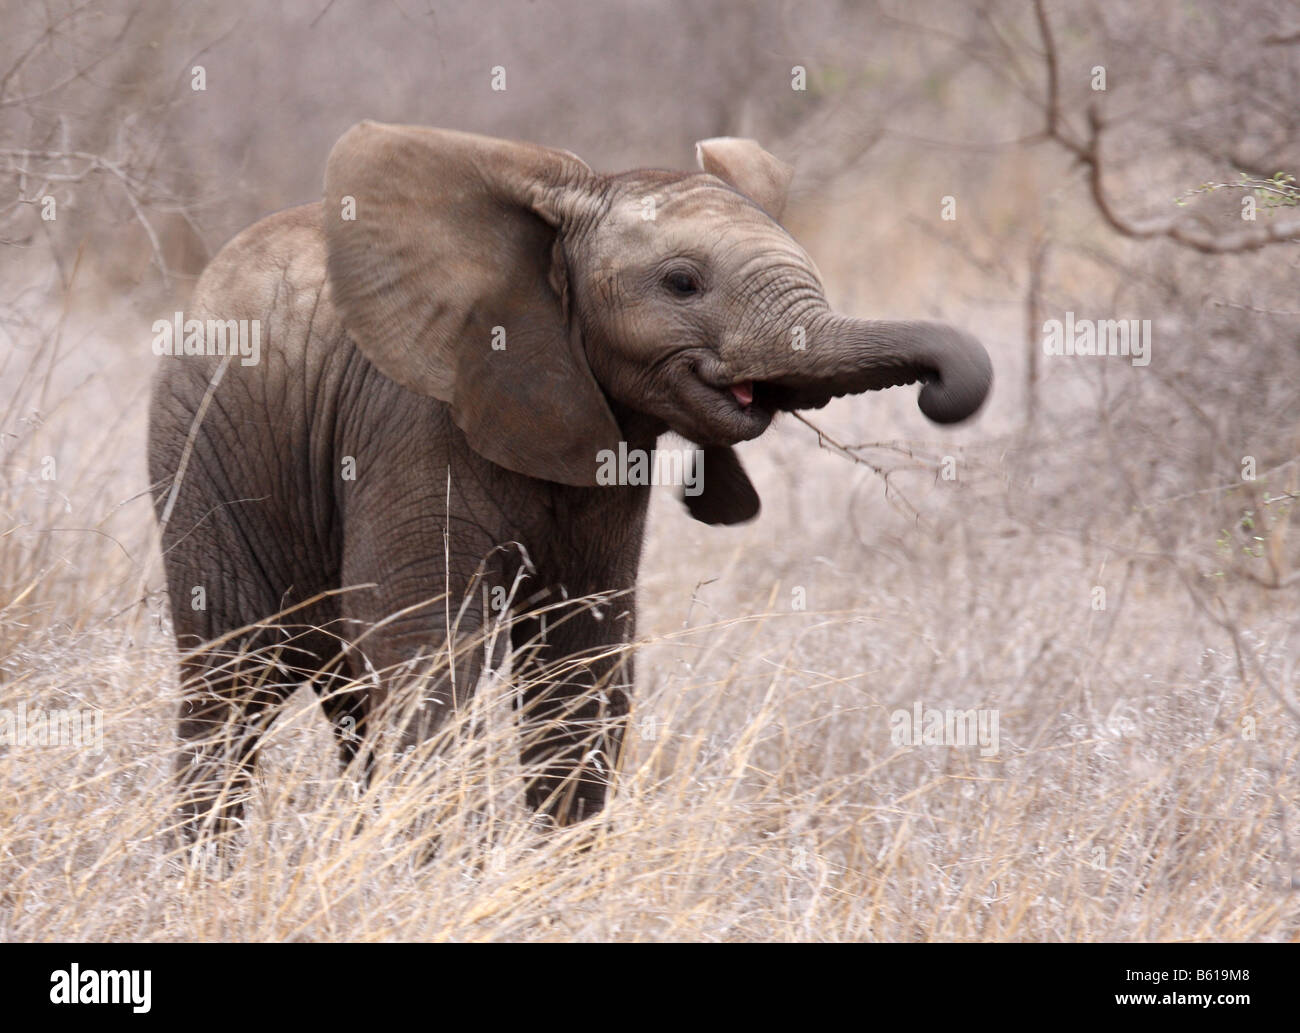 african elephant loxodonta africana single juvenile with trunk raised Stock Photo